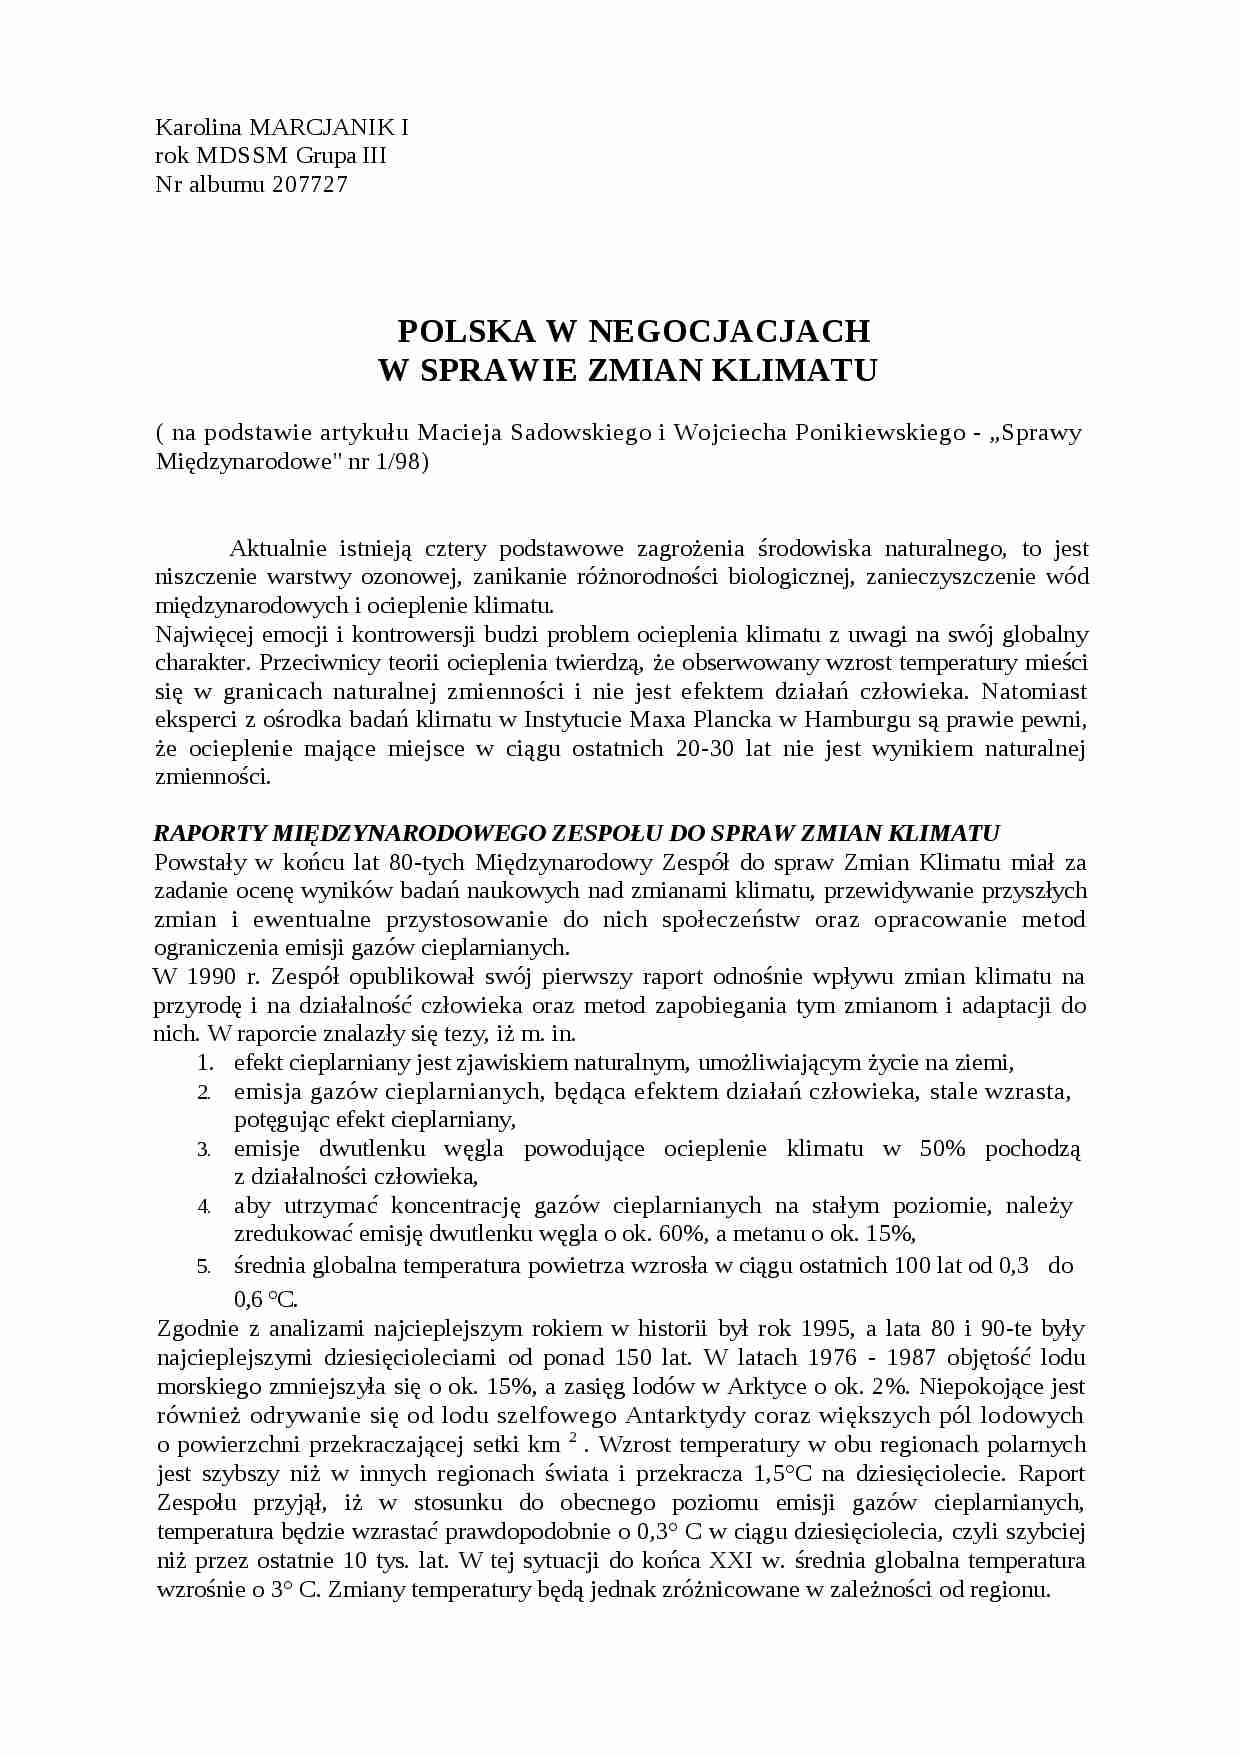 Referat - Polska w negocjacjach w sprawie zmian klimatu - strona 1